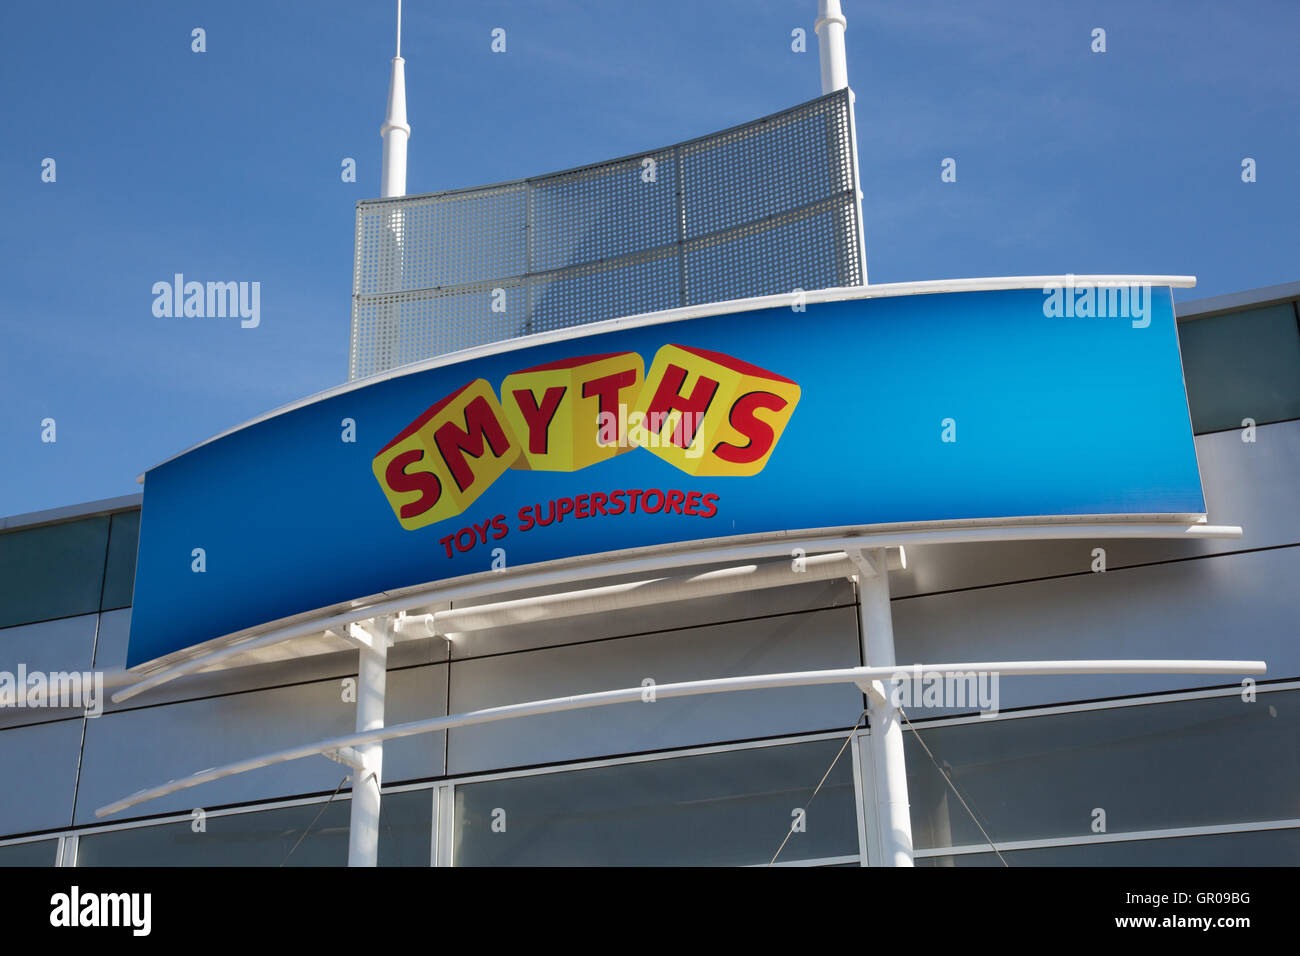 Smyths signage Stock Photo